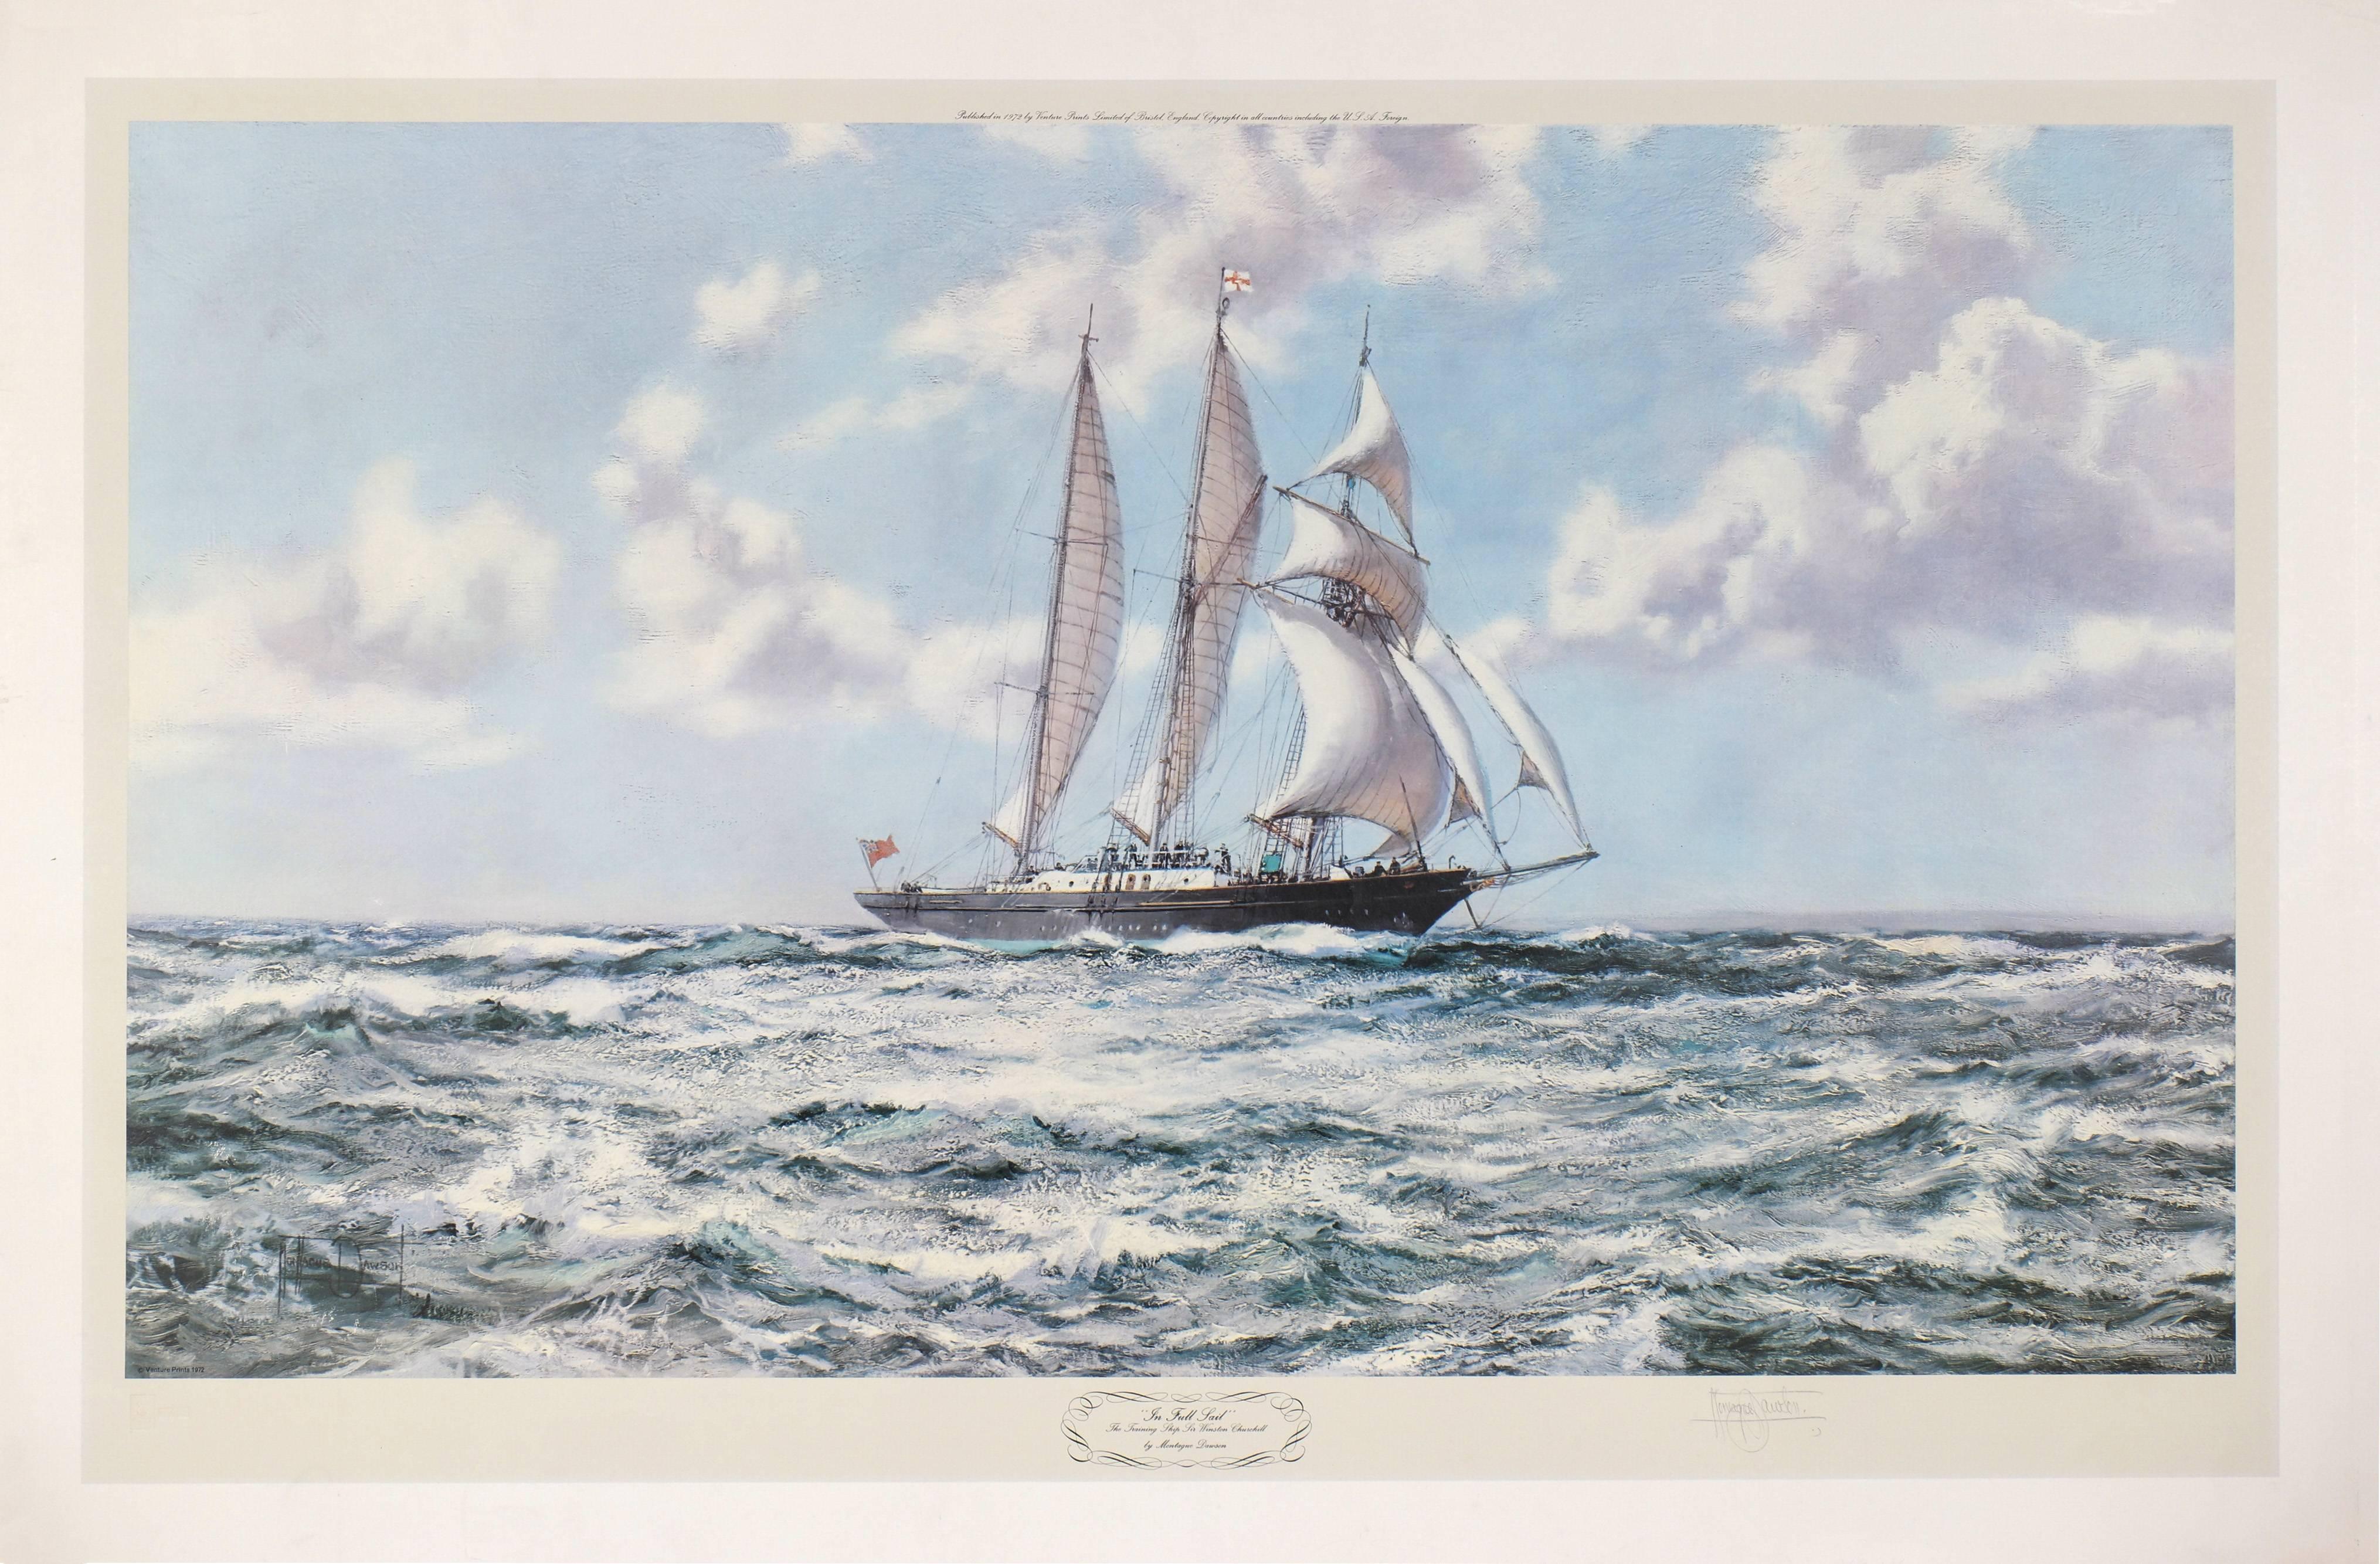 Montague Dawson Landscape Print - In Full Sail, The Training Ship Sir Winston Churchill